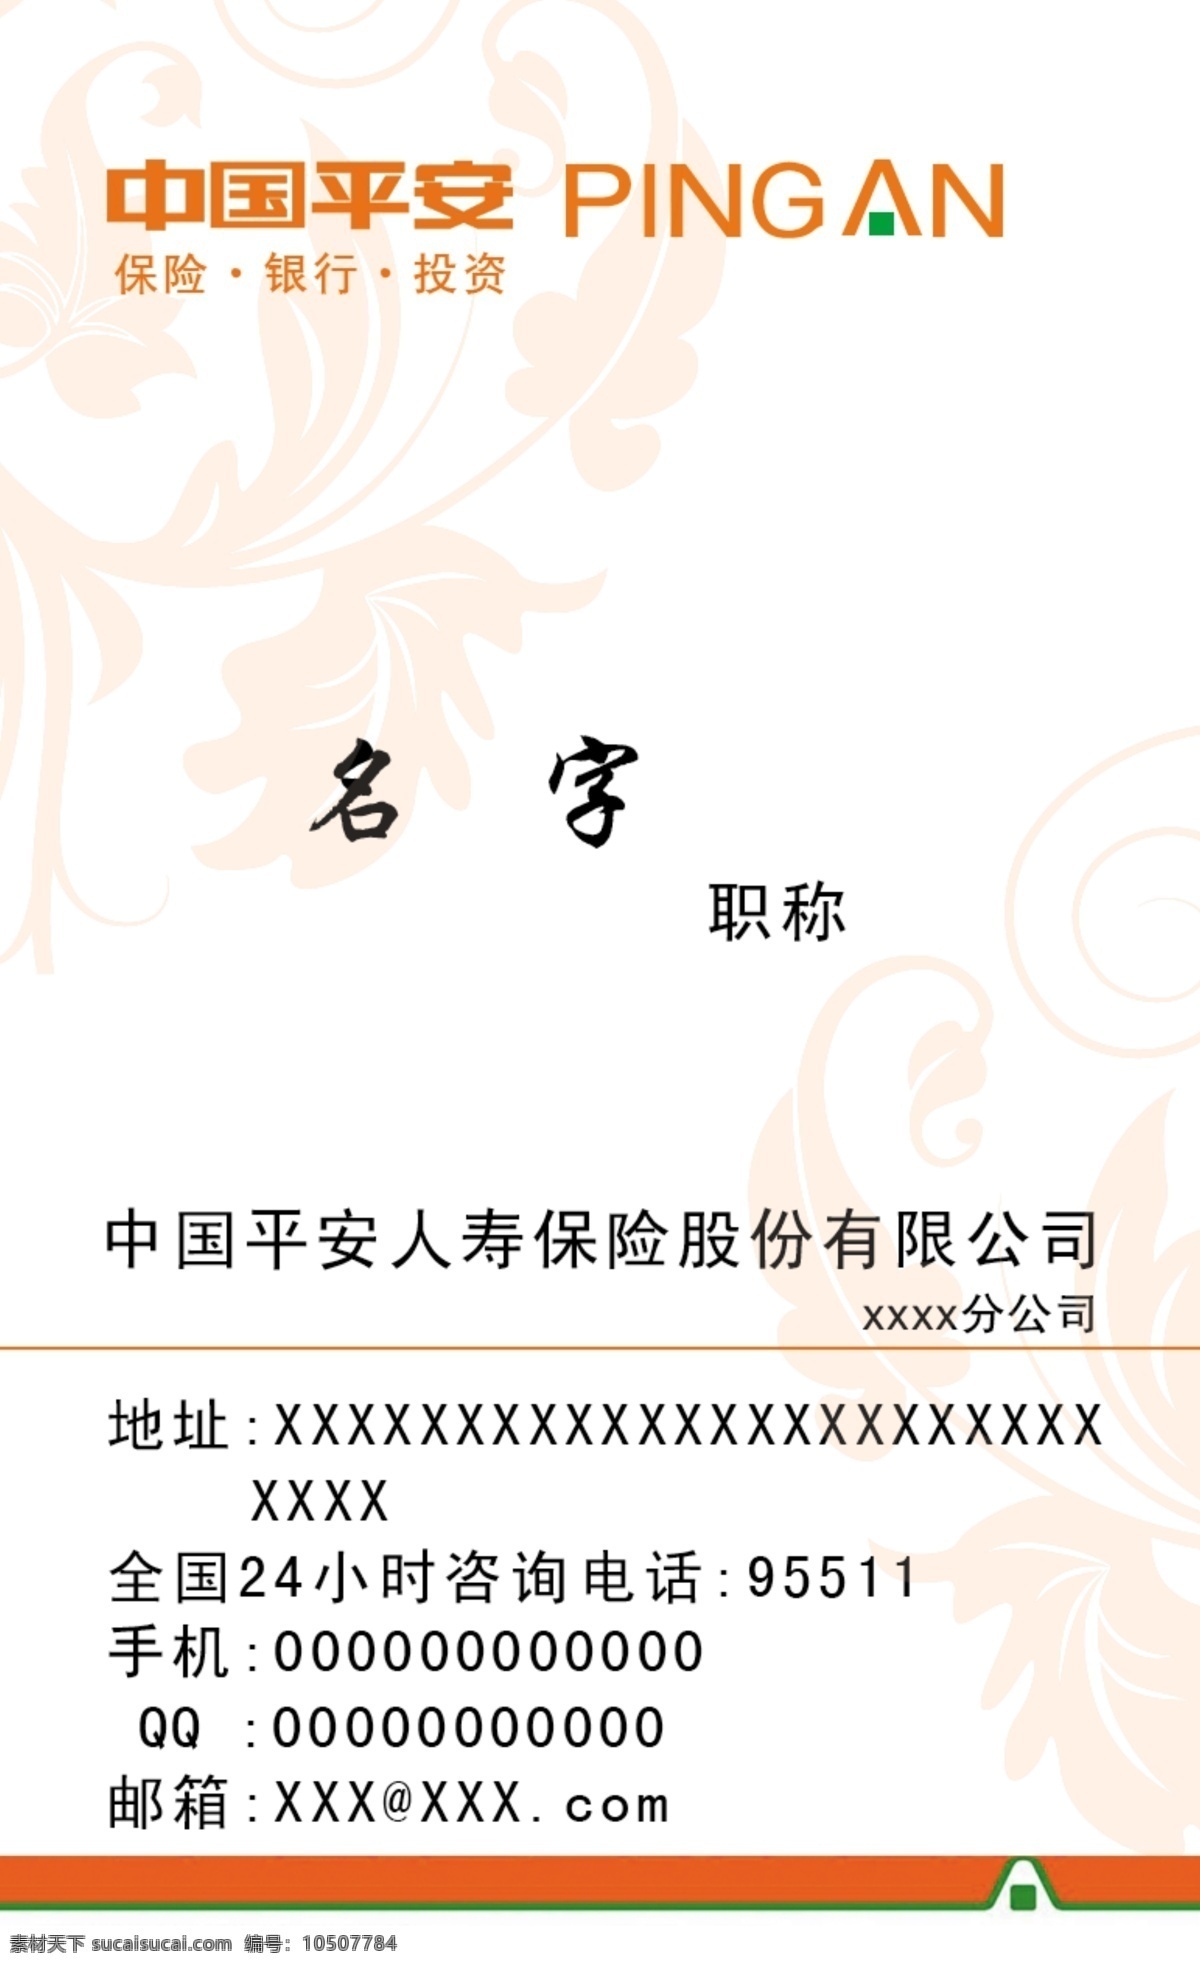 中国平安 名片 logo 广告设计模板 名片设计 平安 源文件 名片卡 广告设计名片